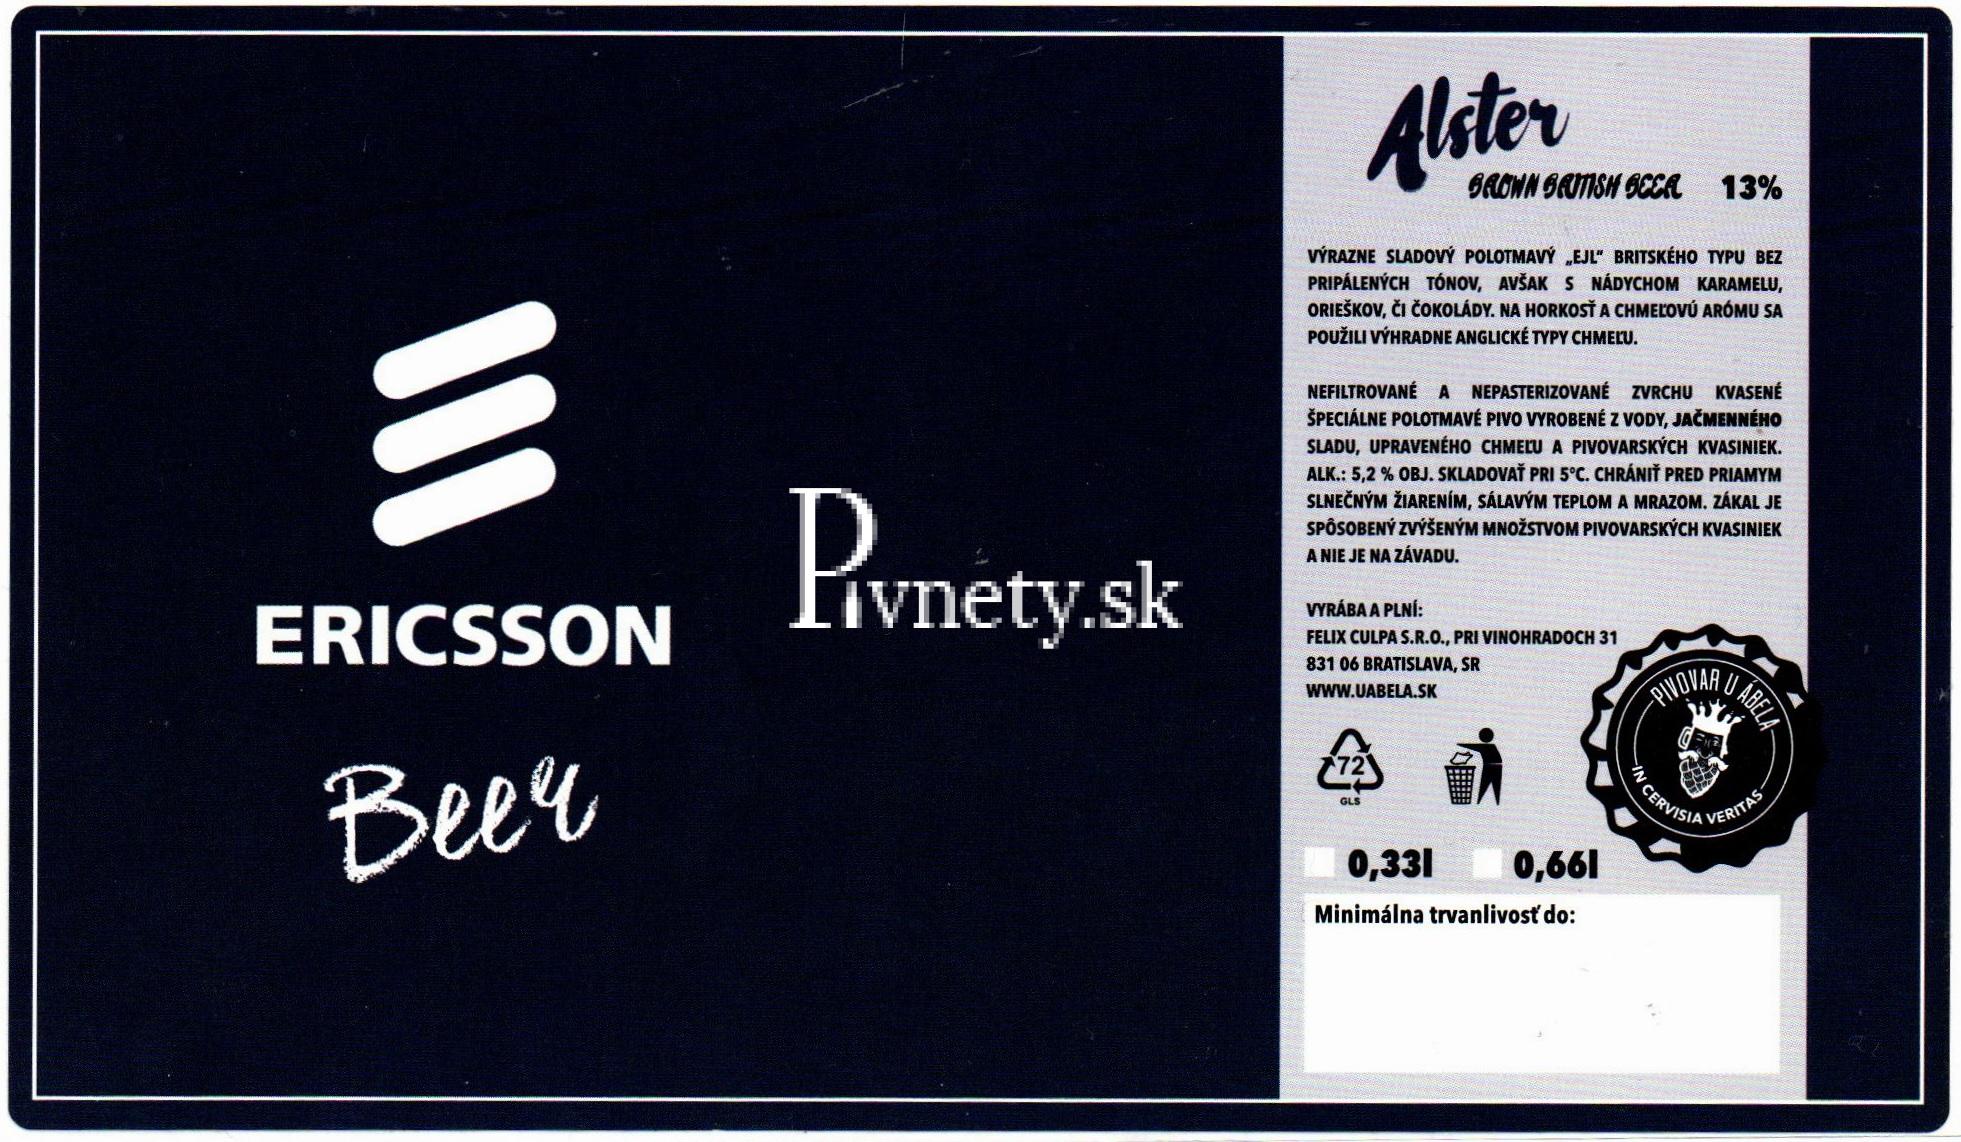 Ericsson Beer 13°